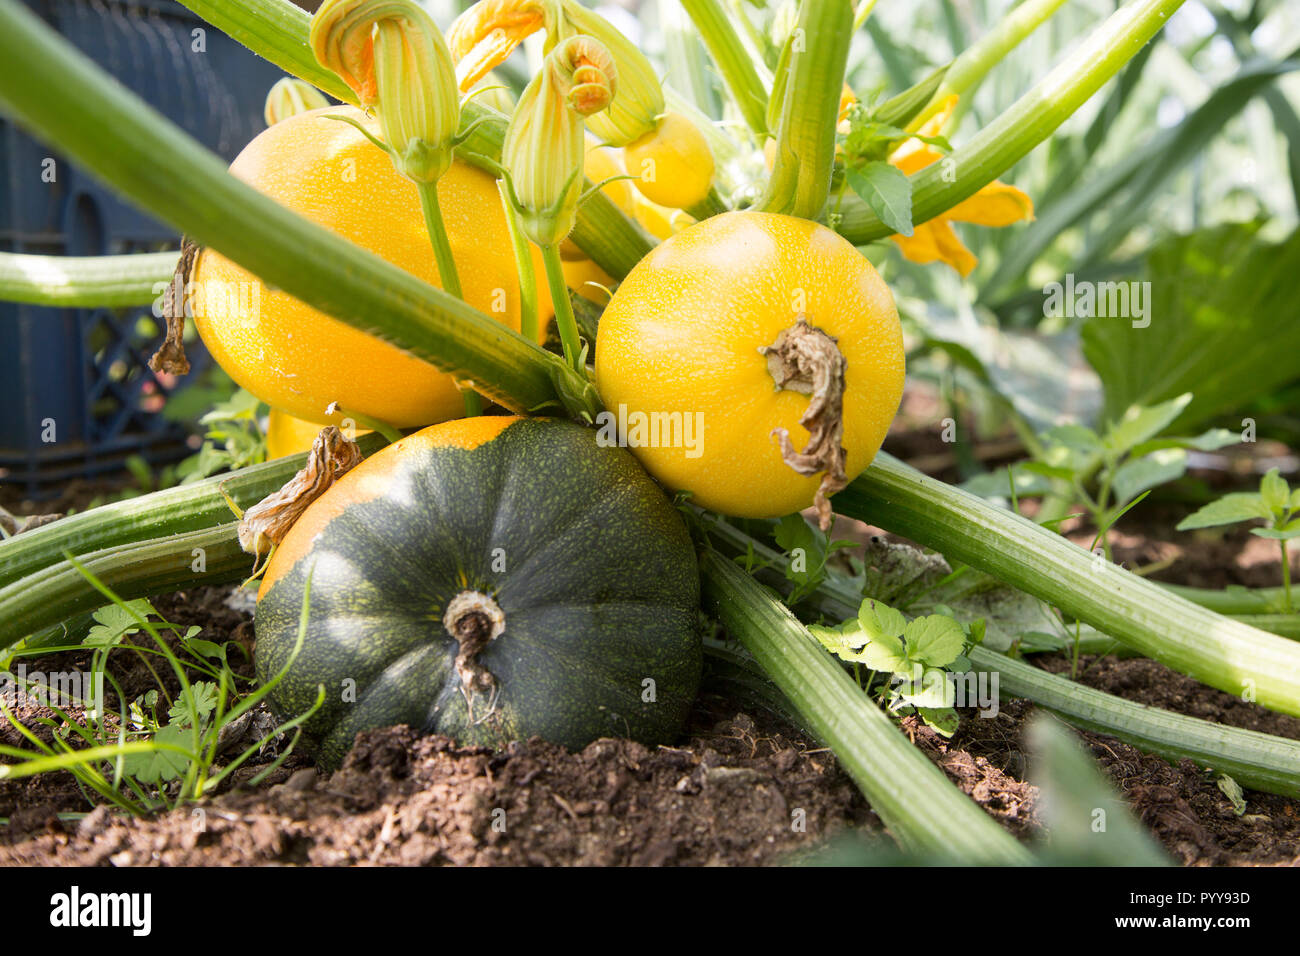 Schließen bis auf Bodenhöhe der Zucchini zucchini Pflanzen gelbe runde  Früchte Suffolk, England, Großbritannien Stockfotografie - Alamy